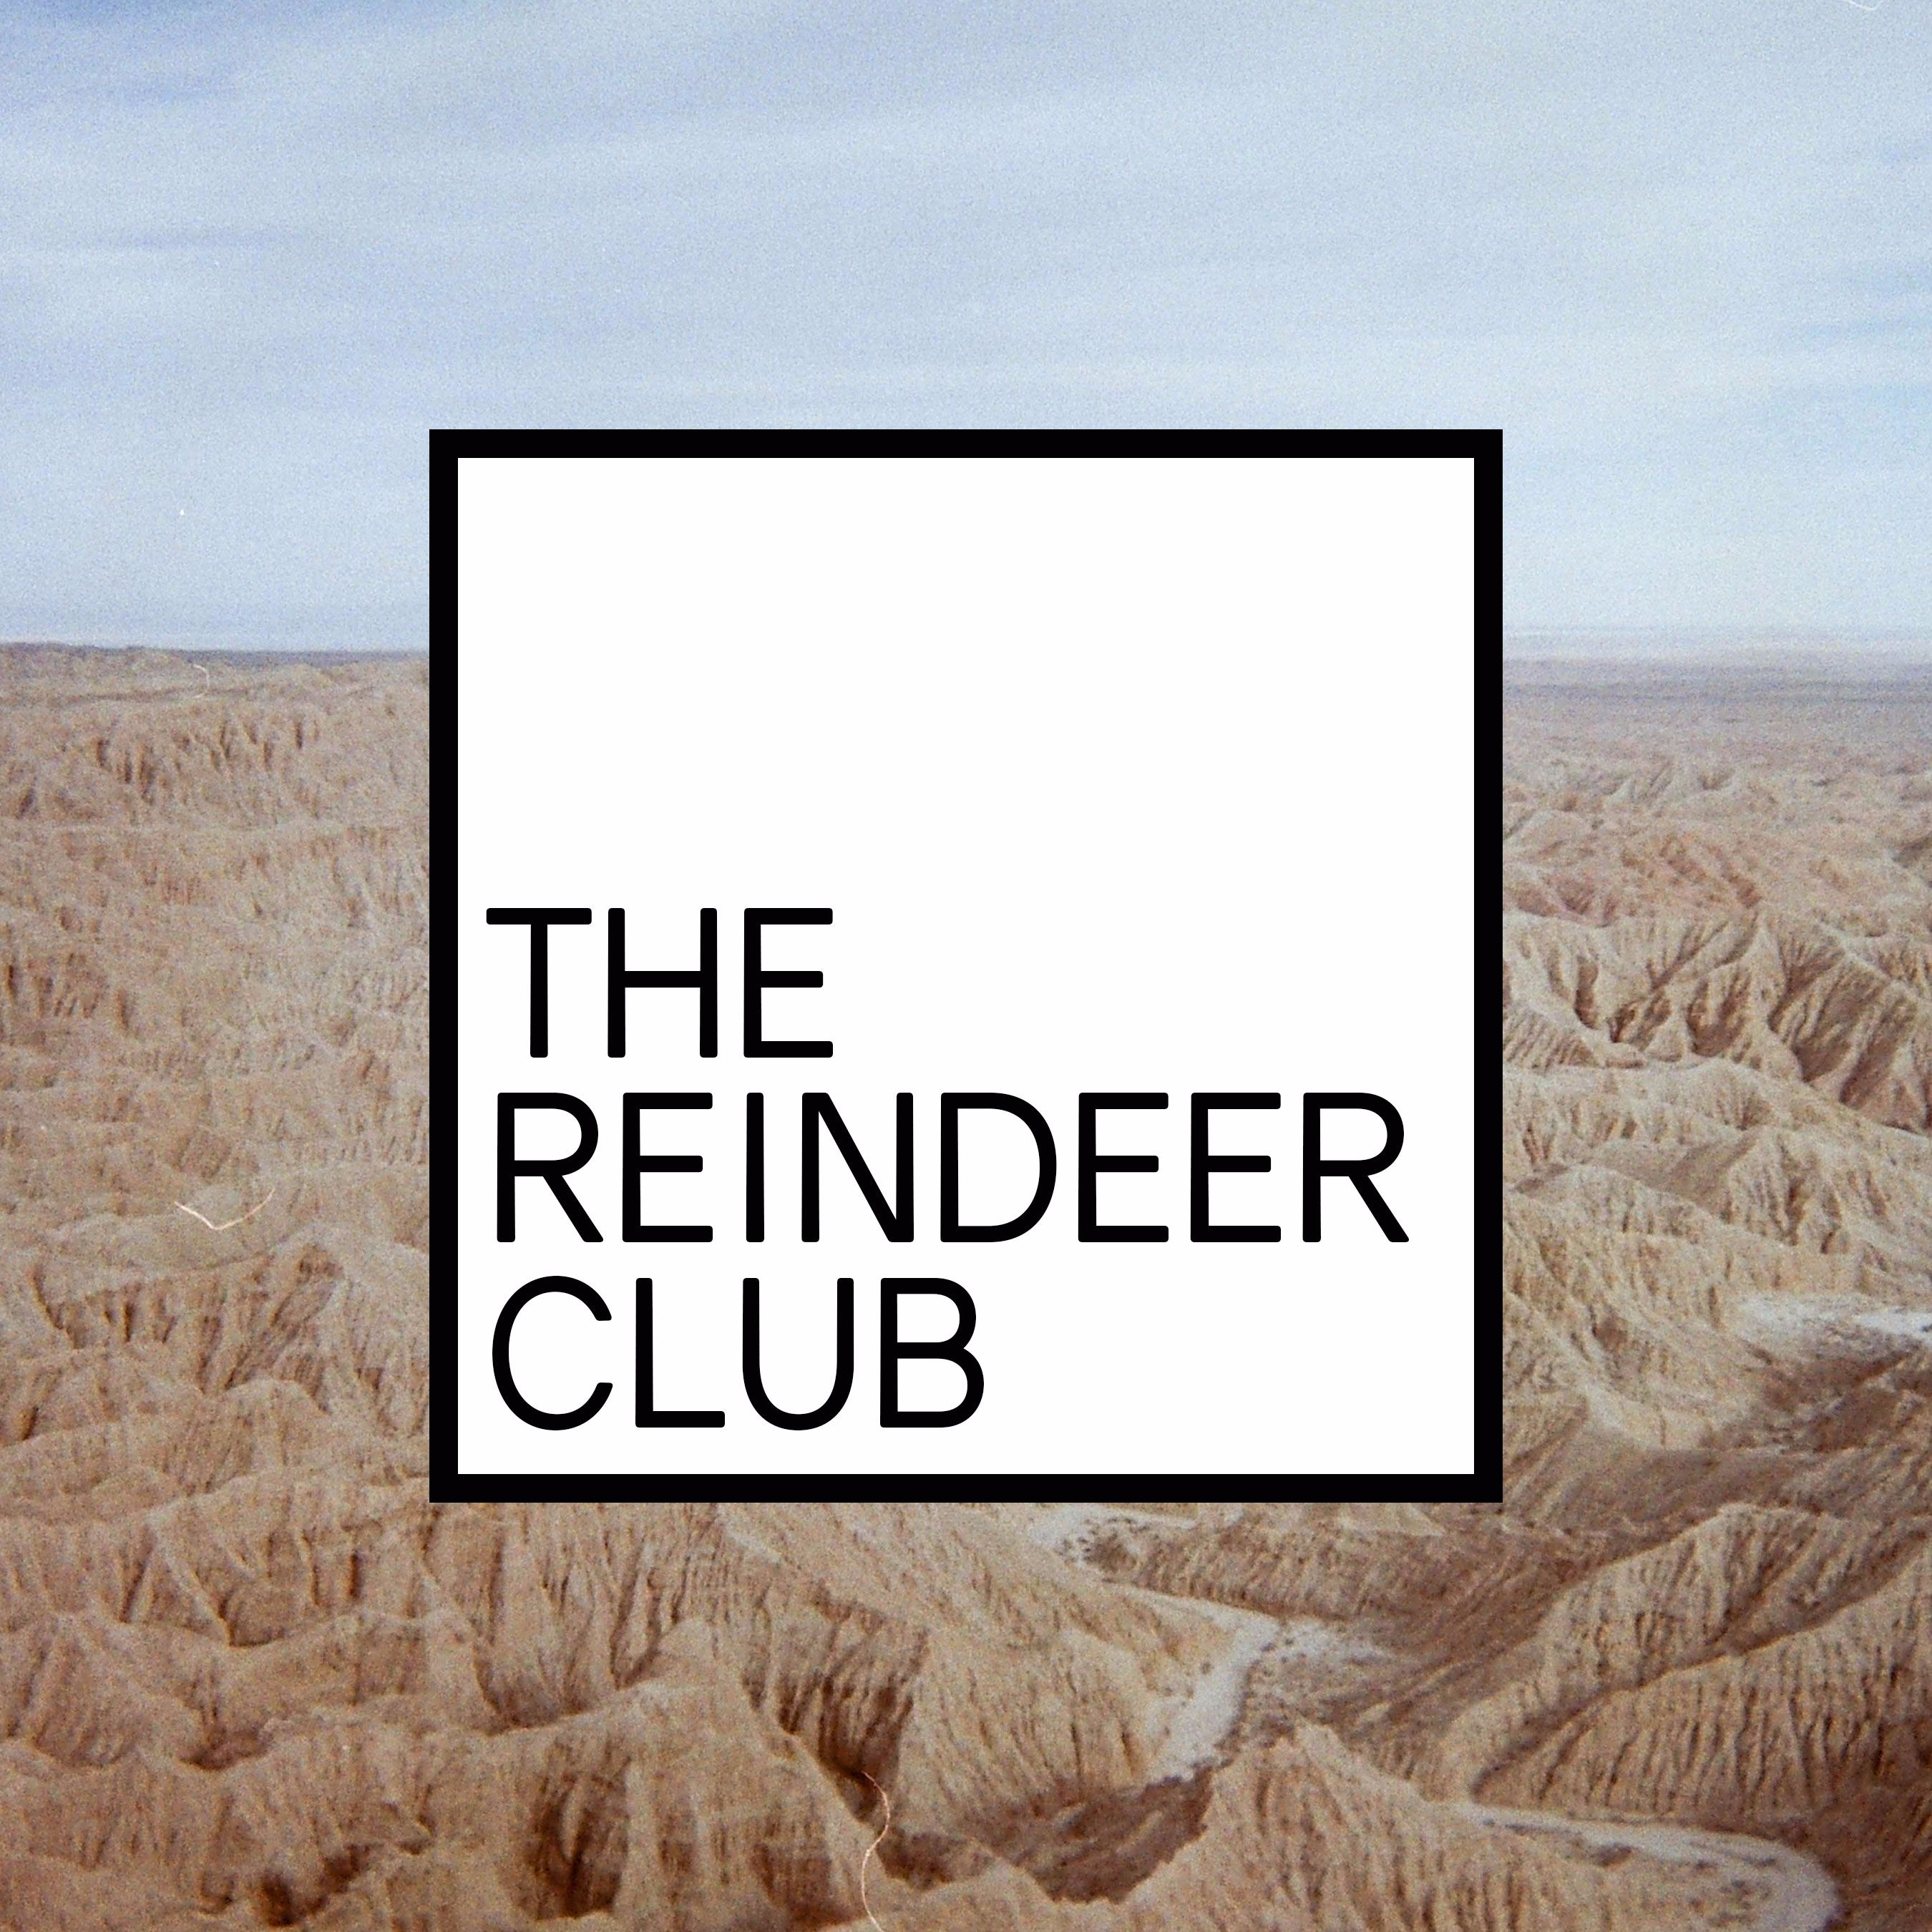 The Reindeer Club